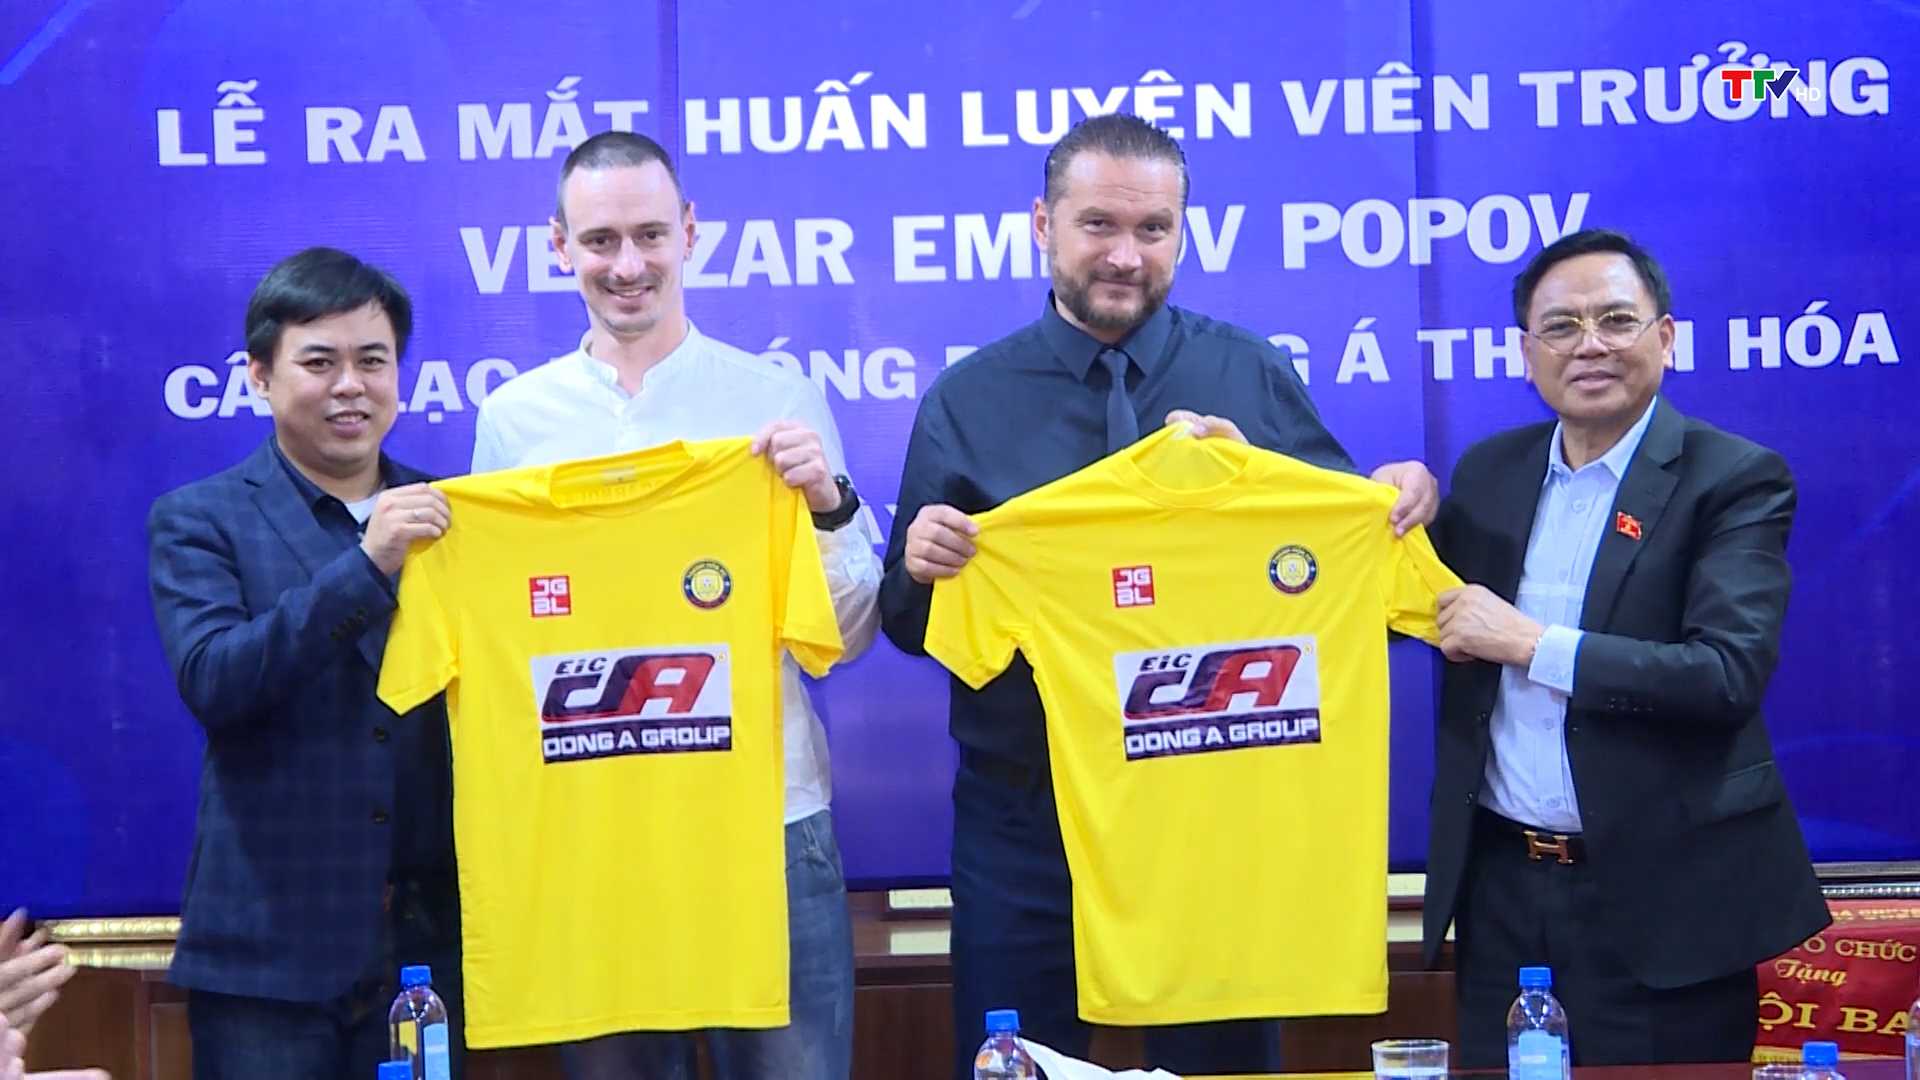 Câu lạc bộ bóng đá Đông Á Thanh Hoá chính thức ra mắt huấn luyện viên trưởng và hội quân trở lại cho mùa giải 2023 - Ảnh 3.